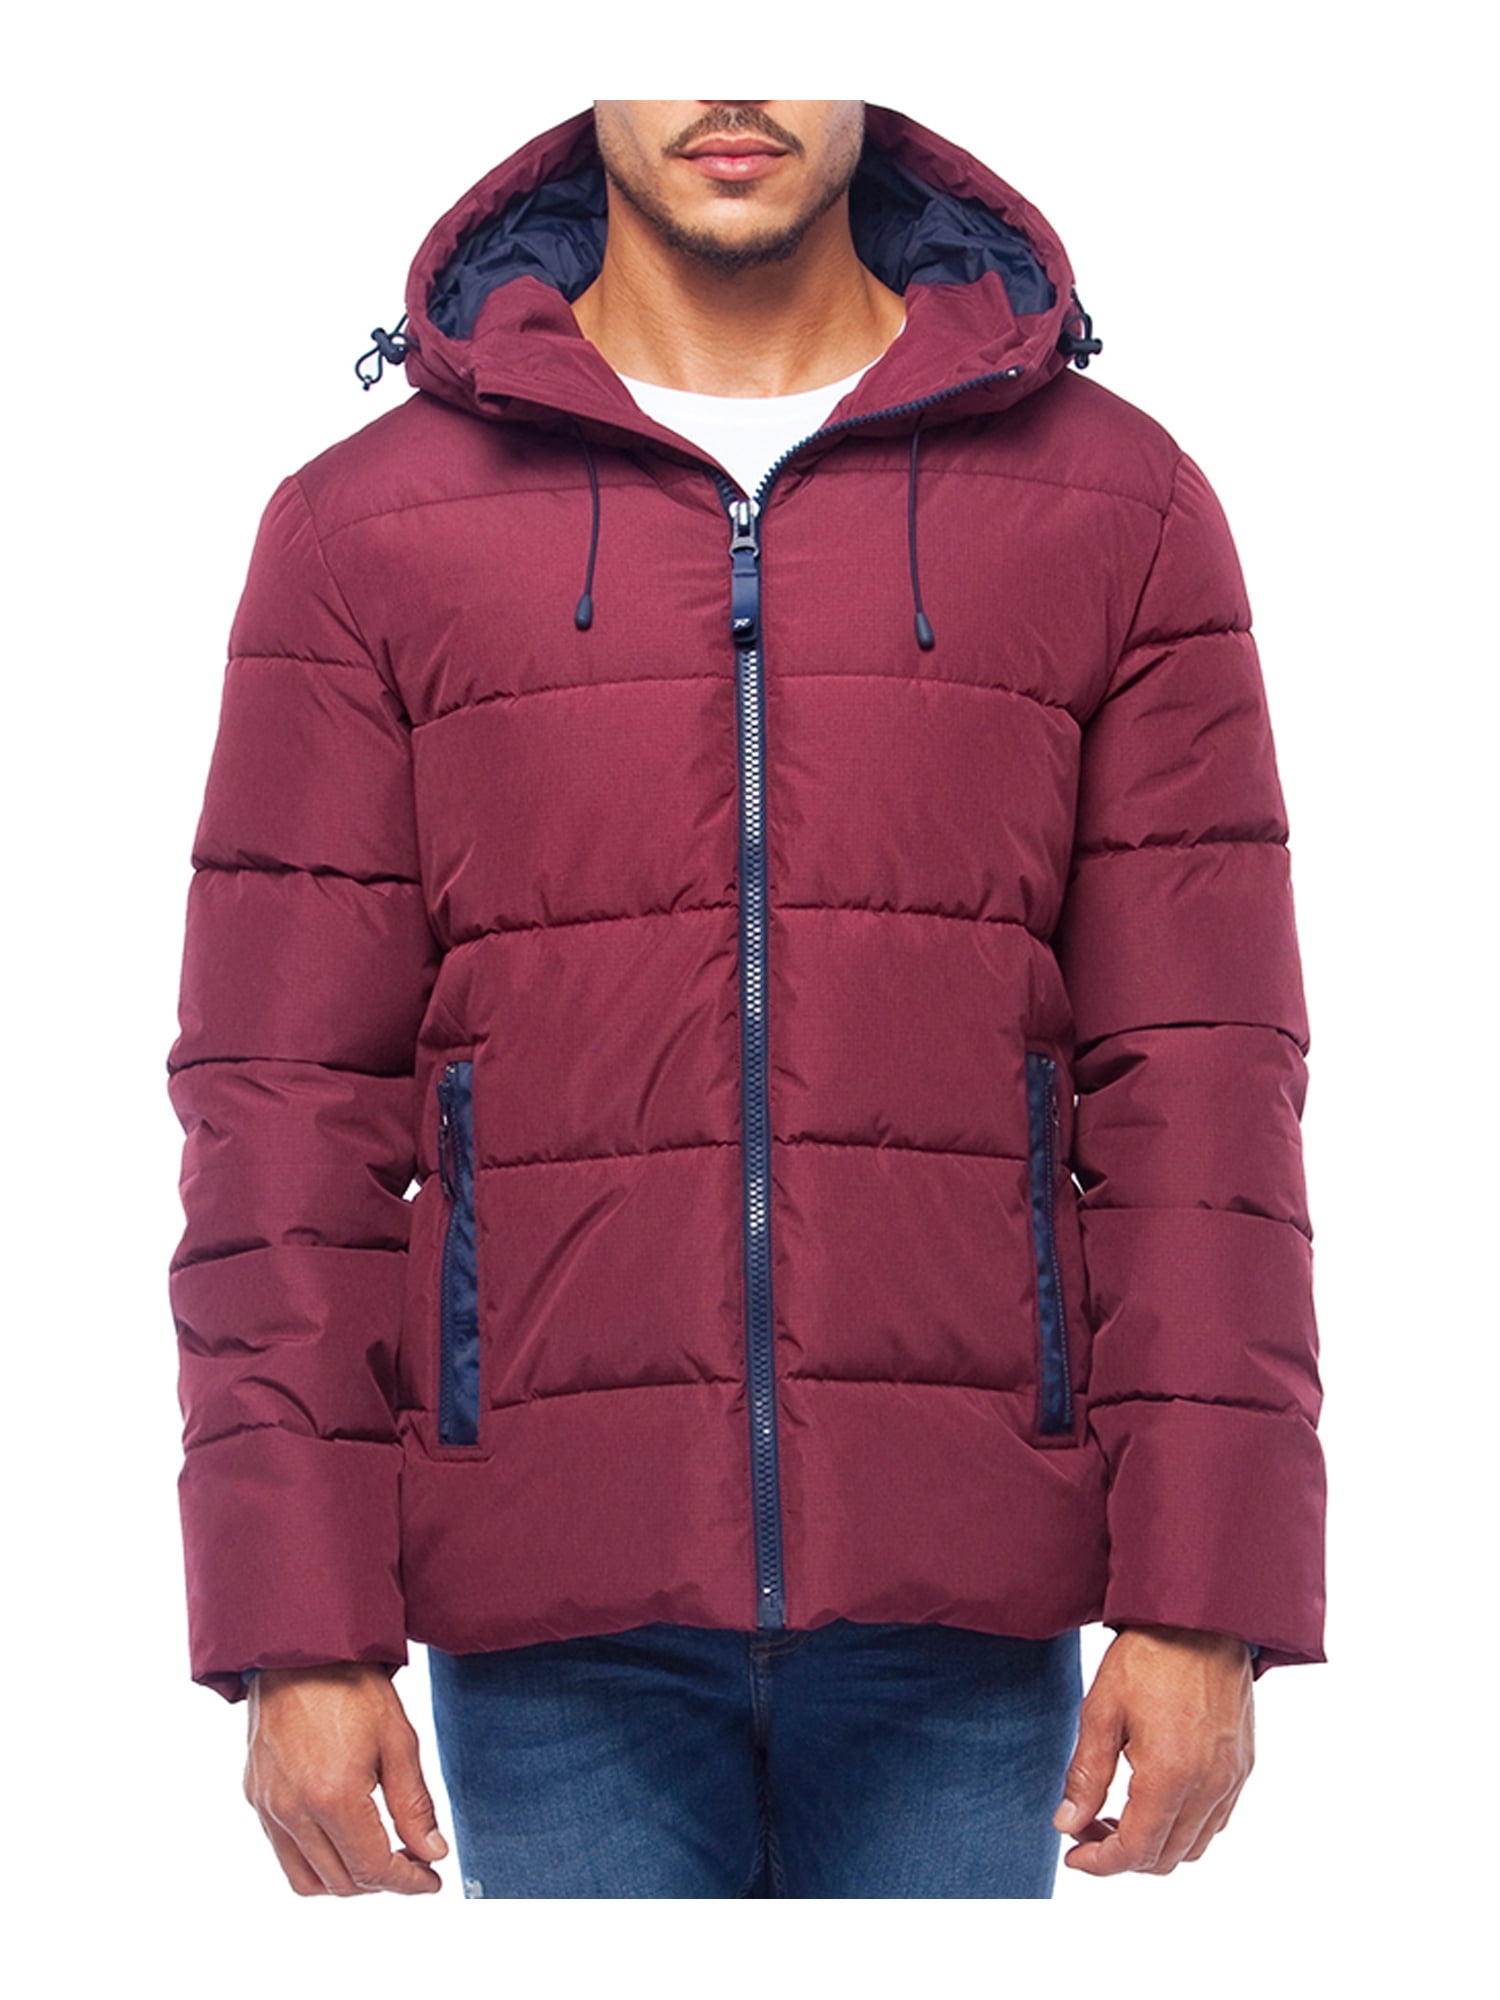 Rokka&Rolla Men's Heavy Winter Coat Thermal Heat Puffer Jacket ...